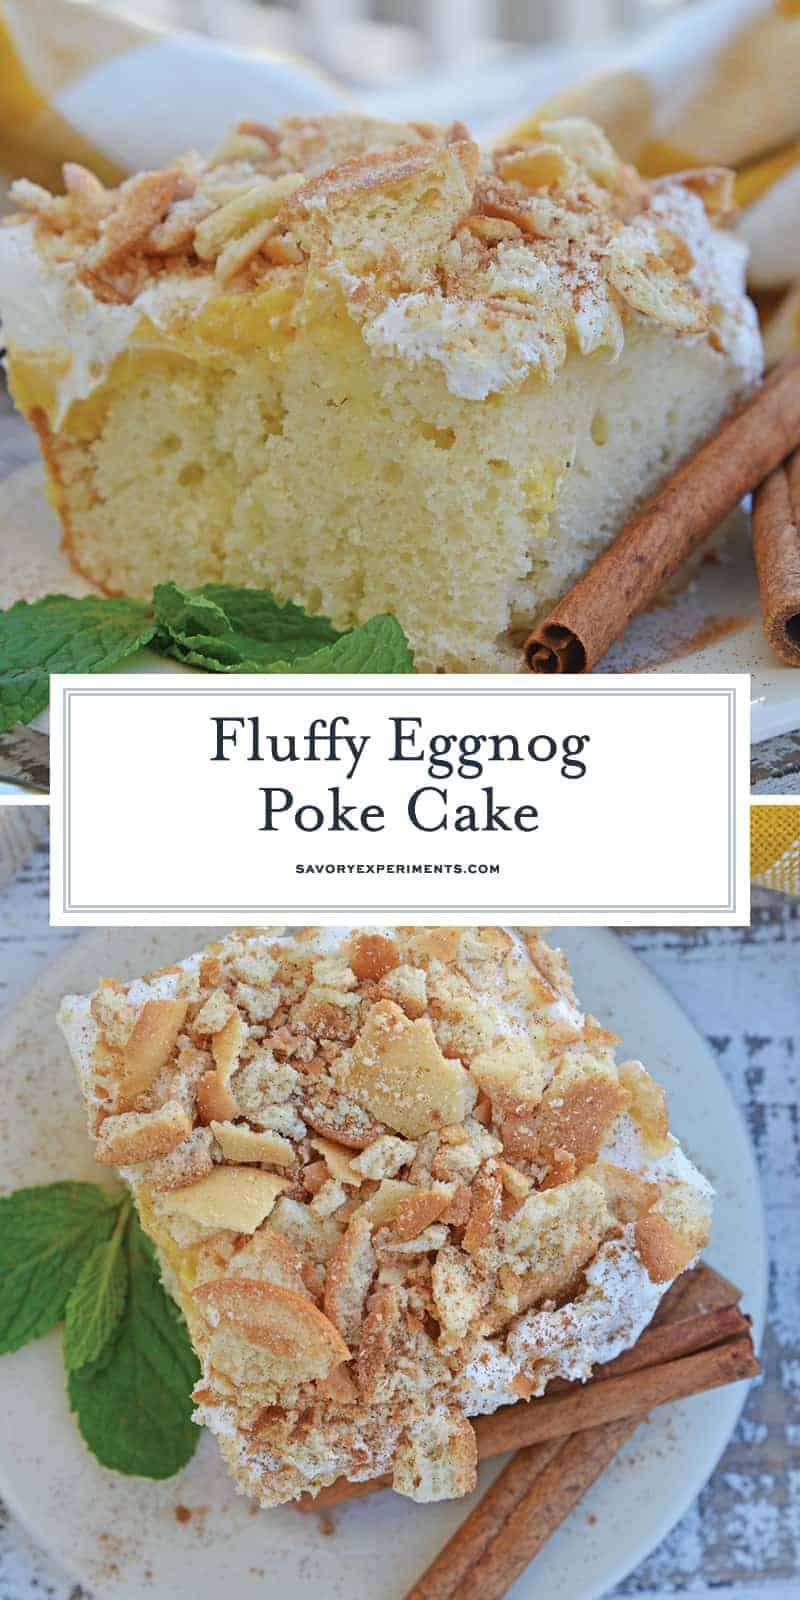 Eggnog Cake Recipe Using Cake Mix
 Eggnog Poke Cake Recipe